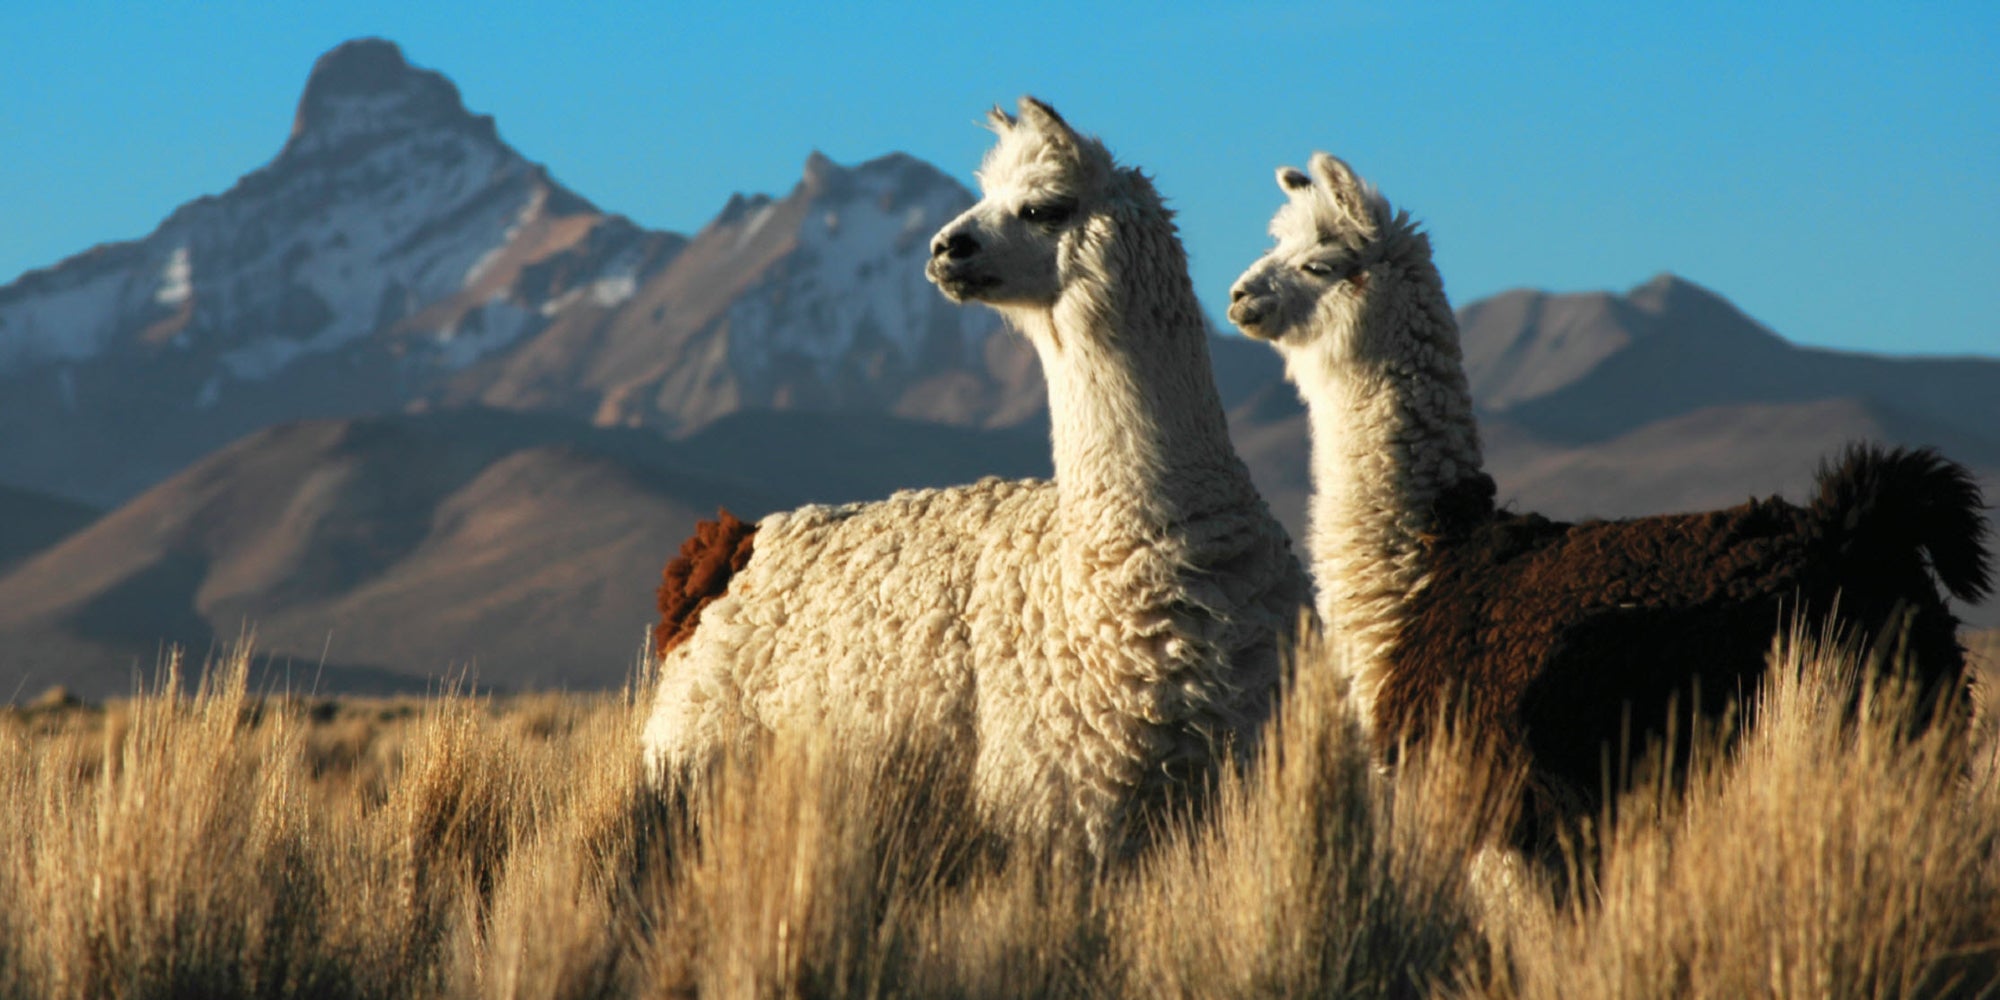 Alpacas on the Alto Plano in Peru